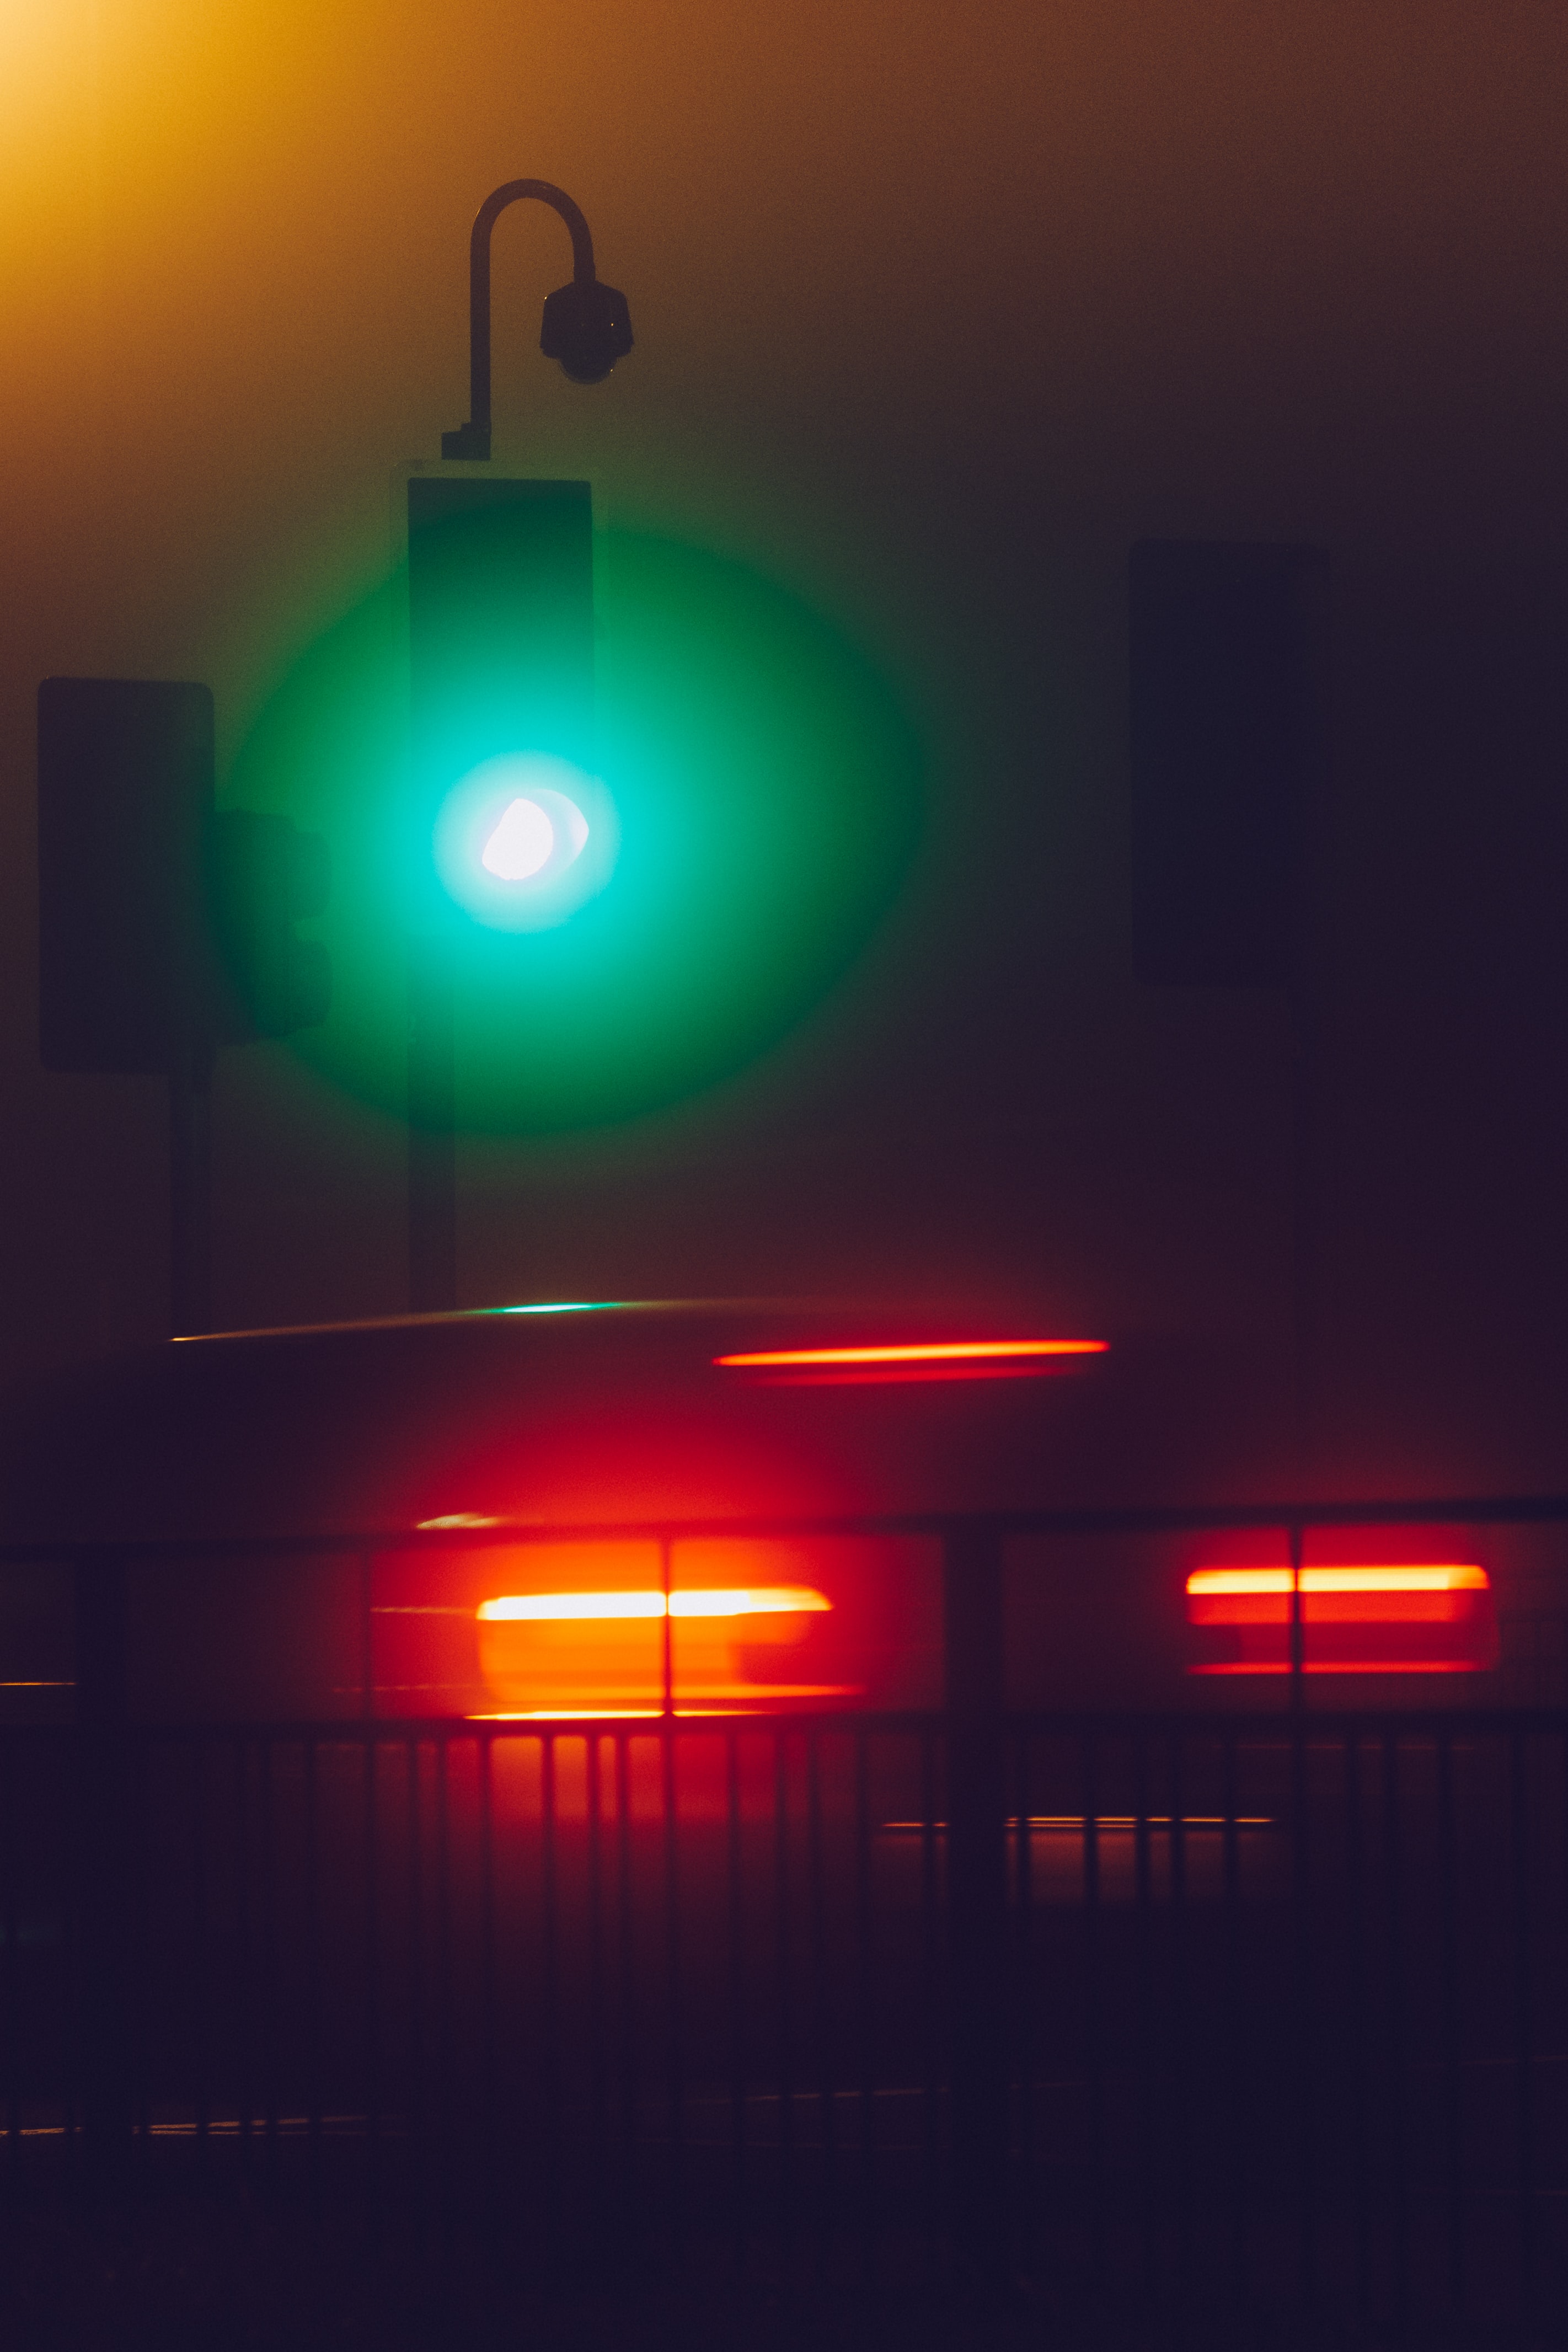 Traffic Light Wallpaper for desktop devices